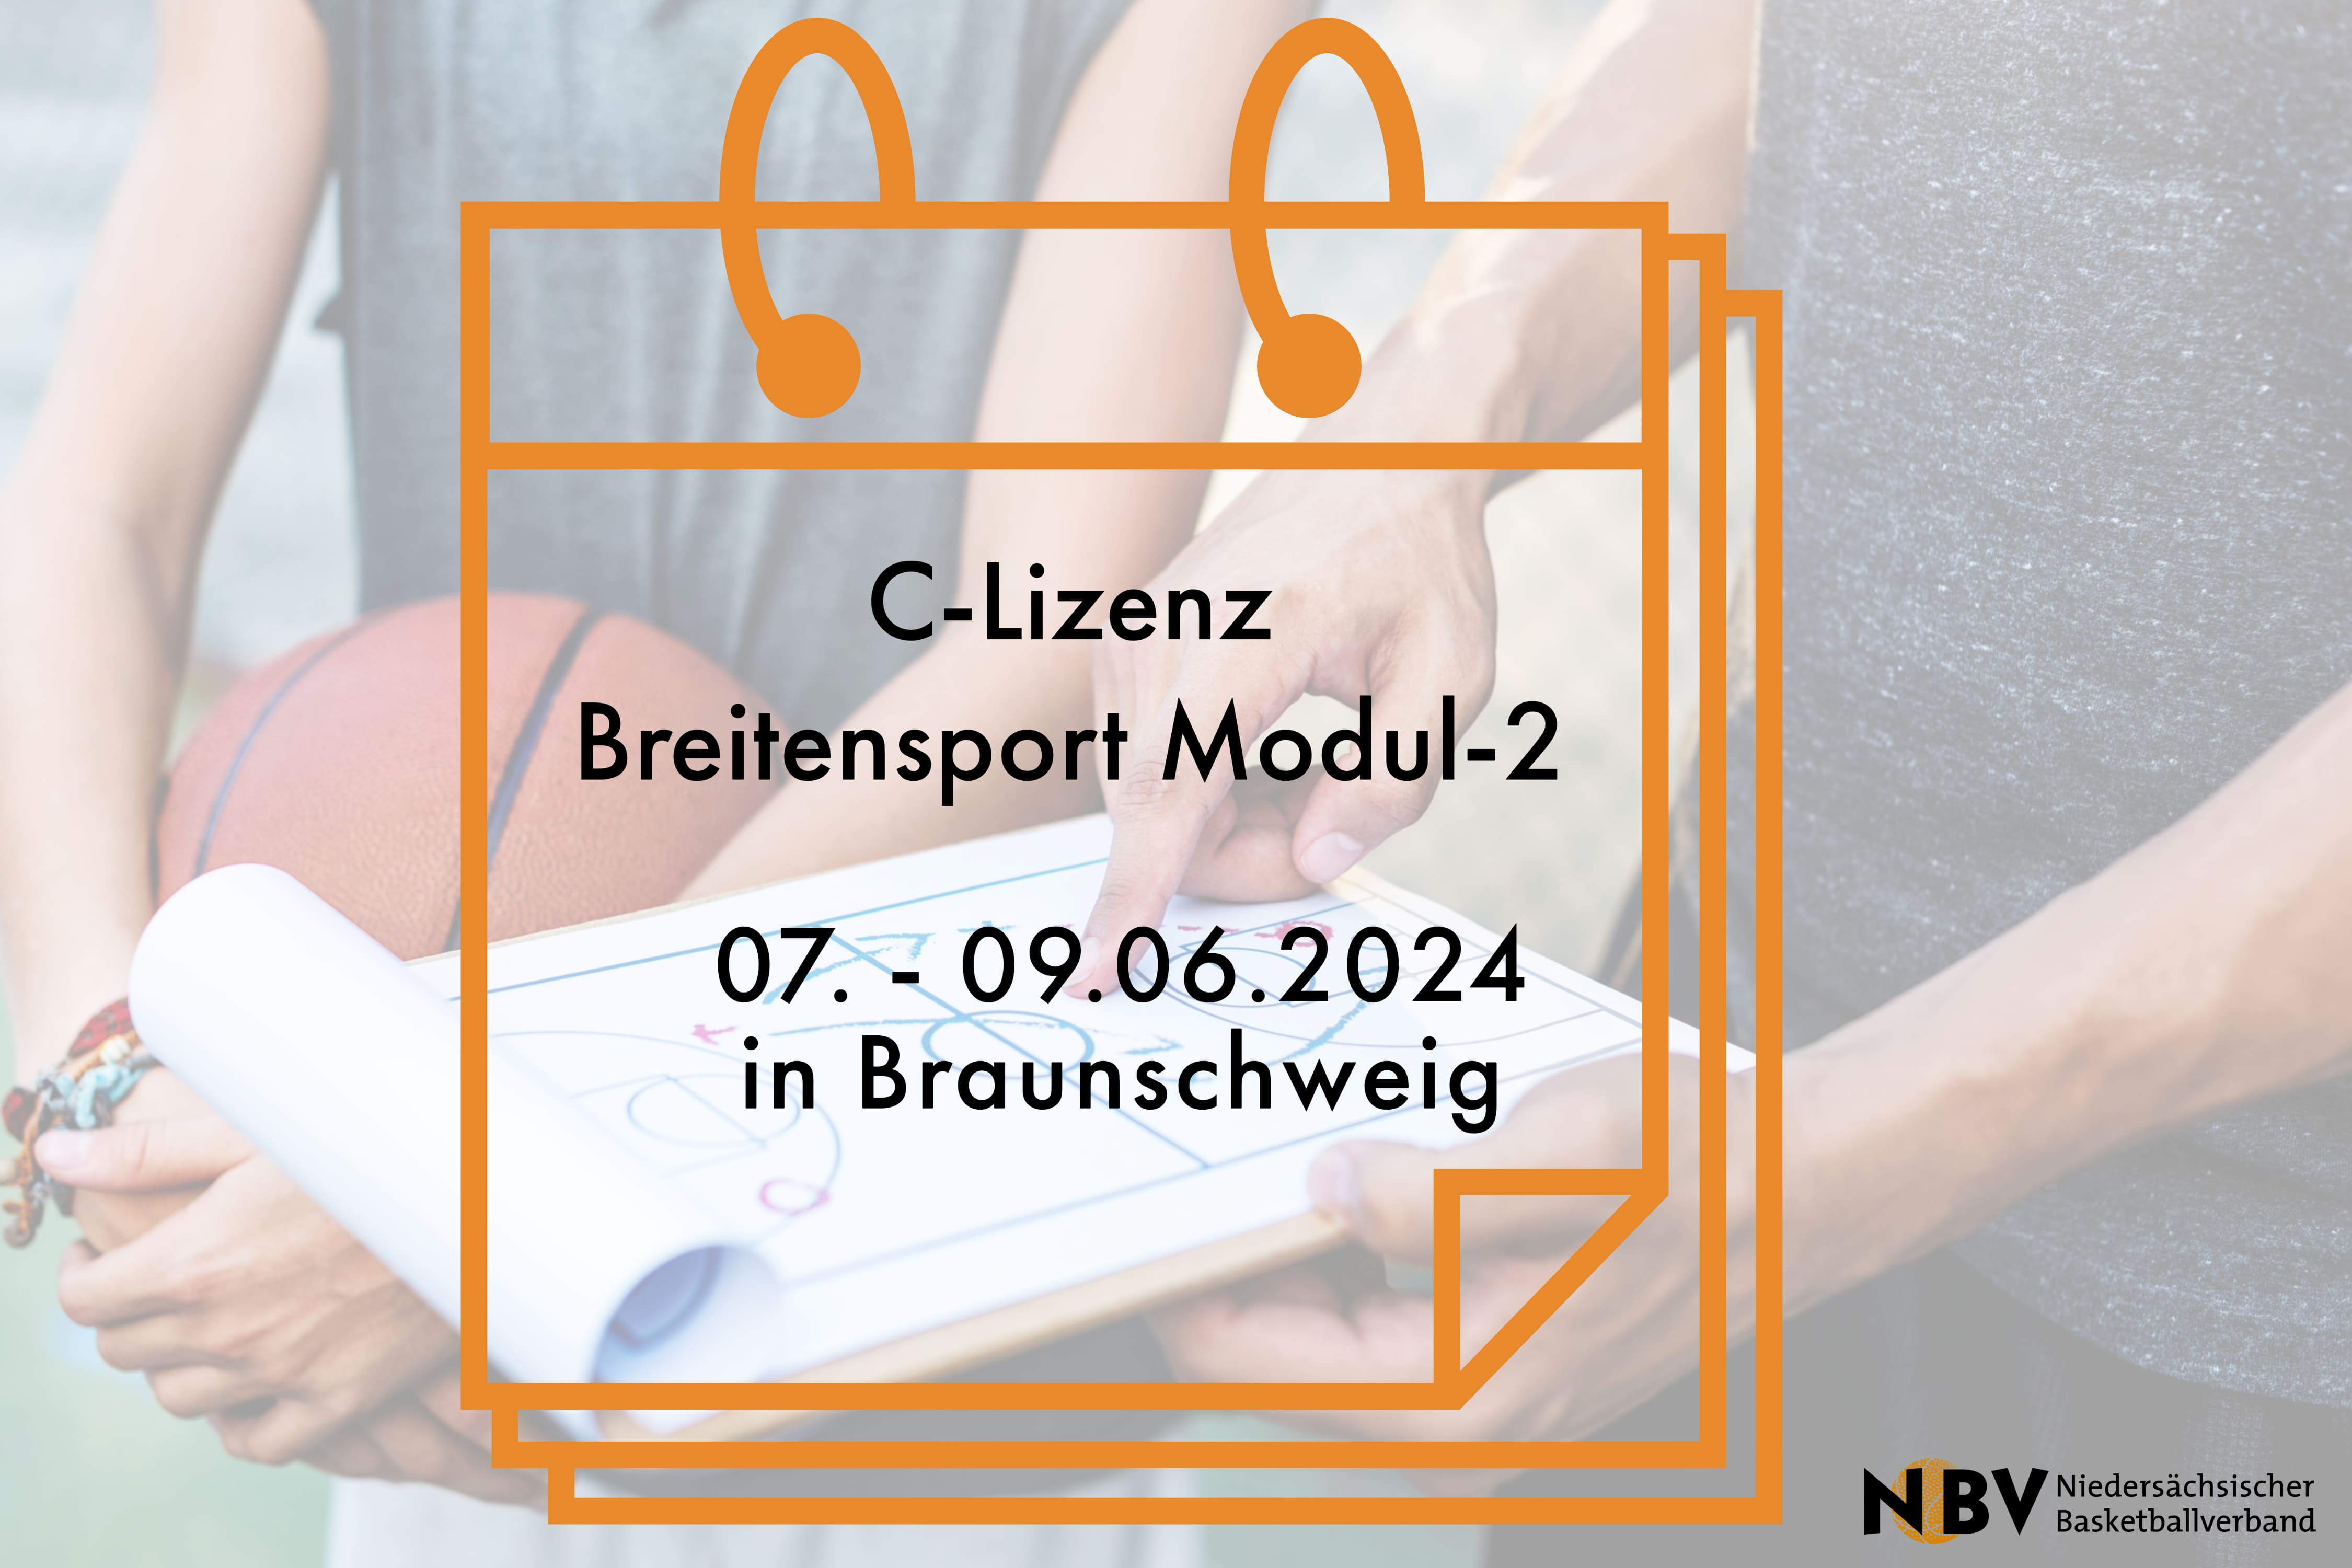 C-Lizenz Breitensport Modul-2 (Braunschweig)